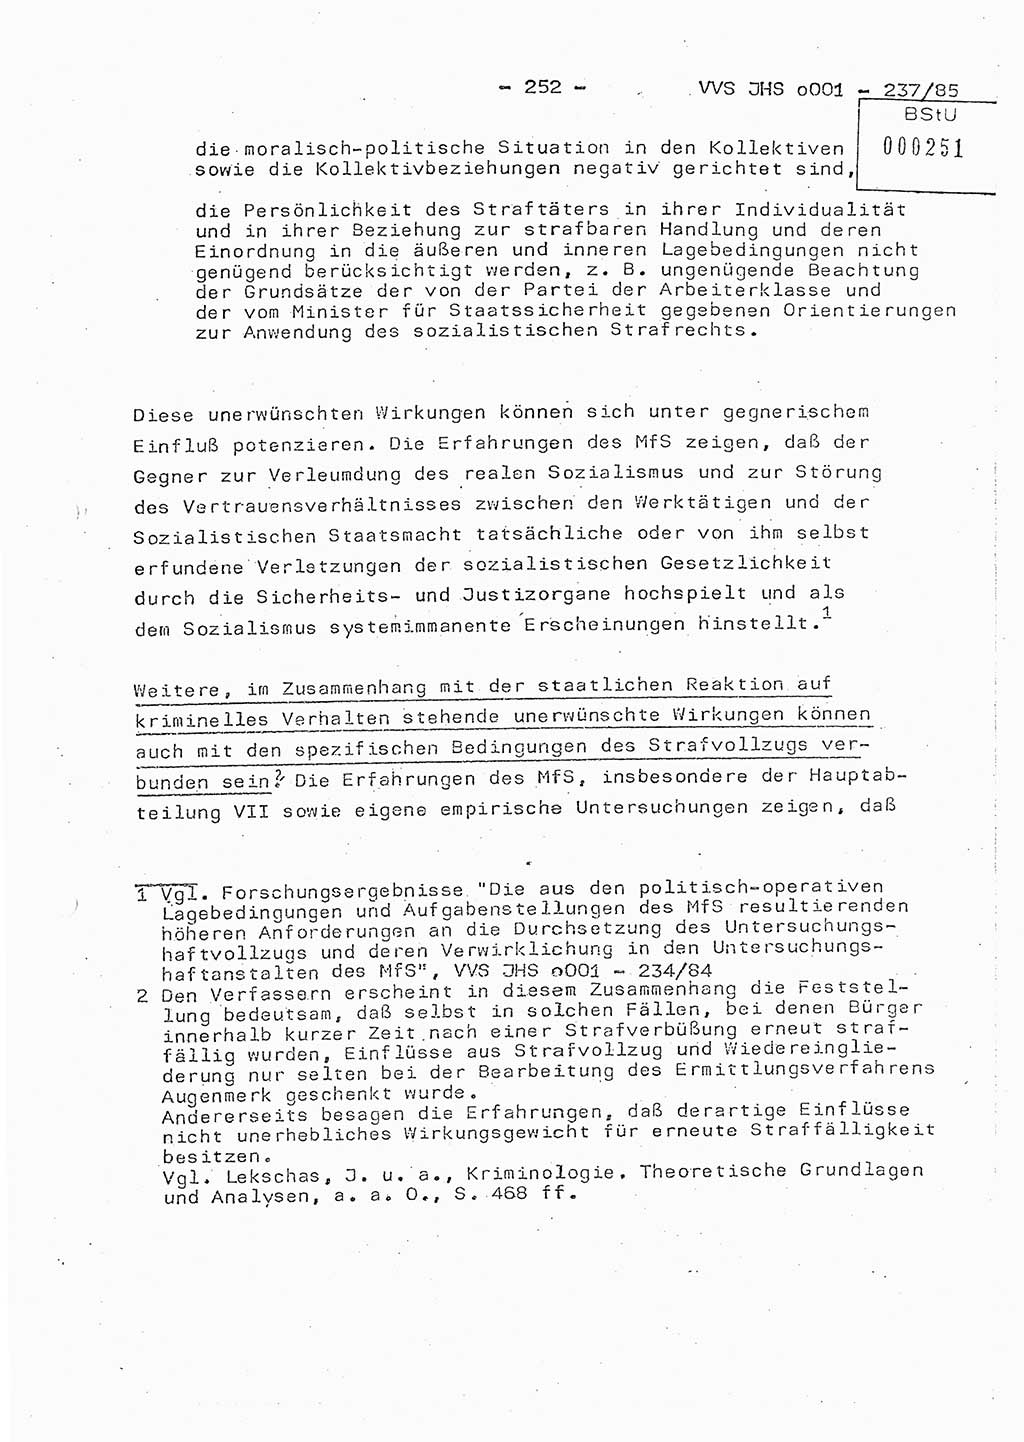 Dissertation Oberstleutnant Peter Jakulski (JHS), Oberstleutnat Christian Rudolph (HA Ⅸ), Major Horst Böttger (ZMD), Major Wolfgang Grüneberg (JHS), Major Albert Meutsch (JHS), Ministerium für Staatssicherheit (MfS) [Deutsche Demokratische Republik (DDR)], Juristische Hochschule (JHS), Vertrauliche Verschlußsache (VVS) o001-237/85, Potsdam 1985, Seite 252 (Diss. MfS DDR JHS VVS o001-237/85 1985, S. 252)